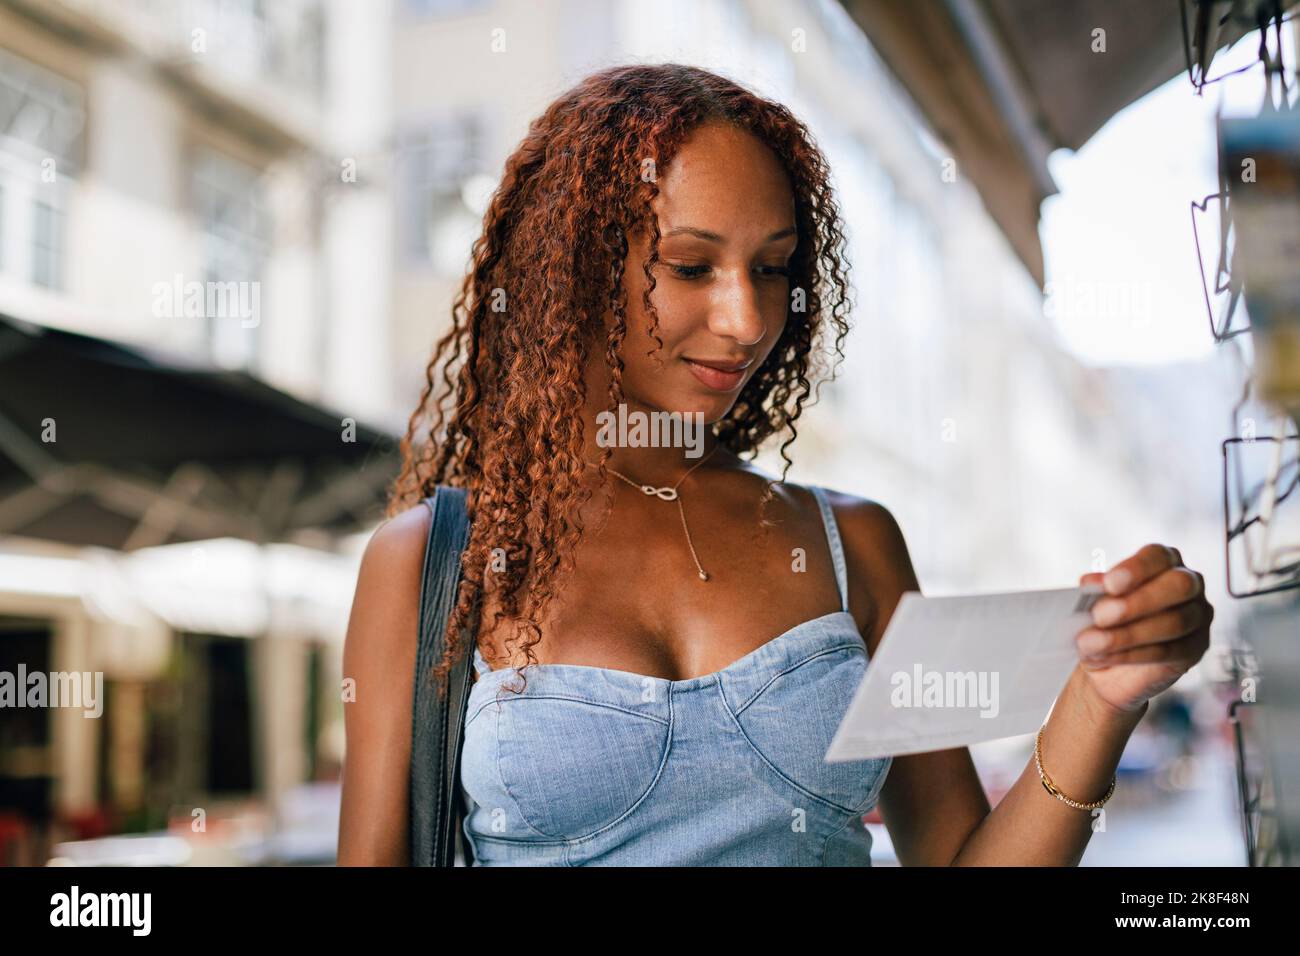 Lächelnde junge Frau mit lockigen Haaren, die auf eine Postkarte schaut Stockfoto